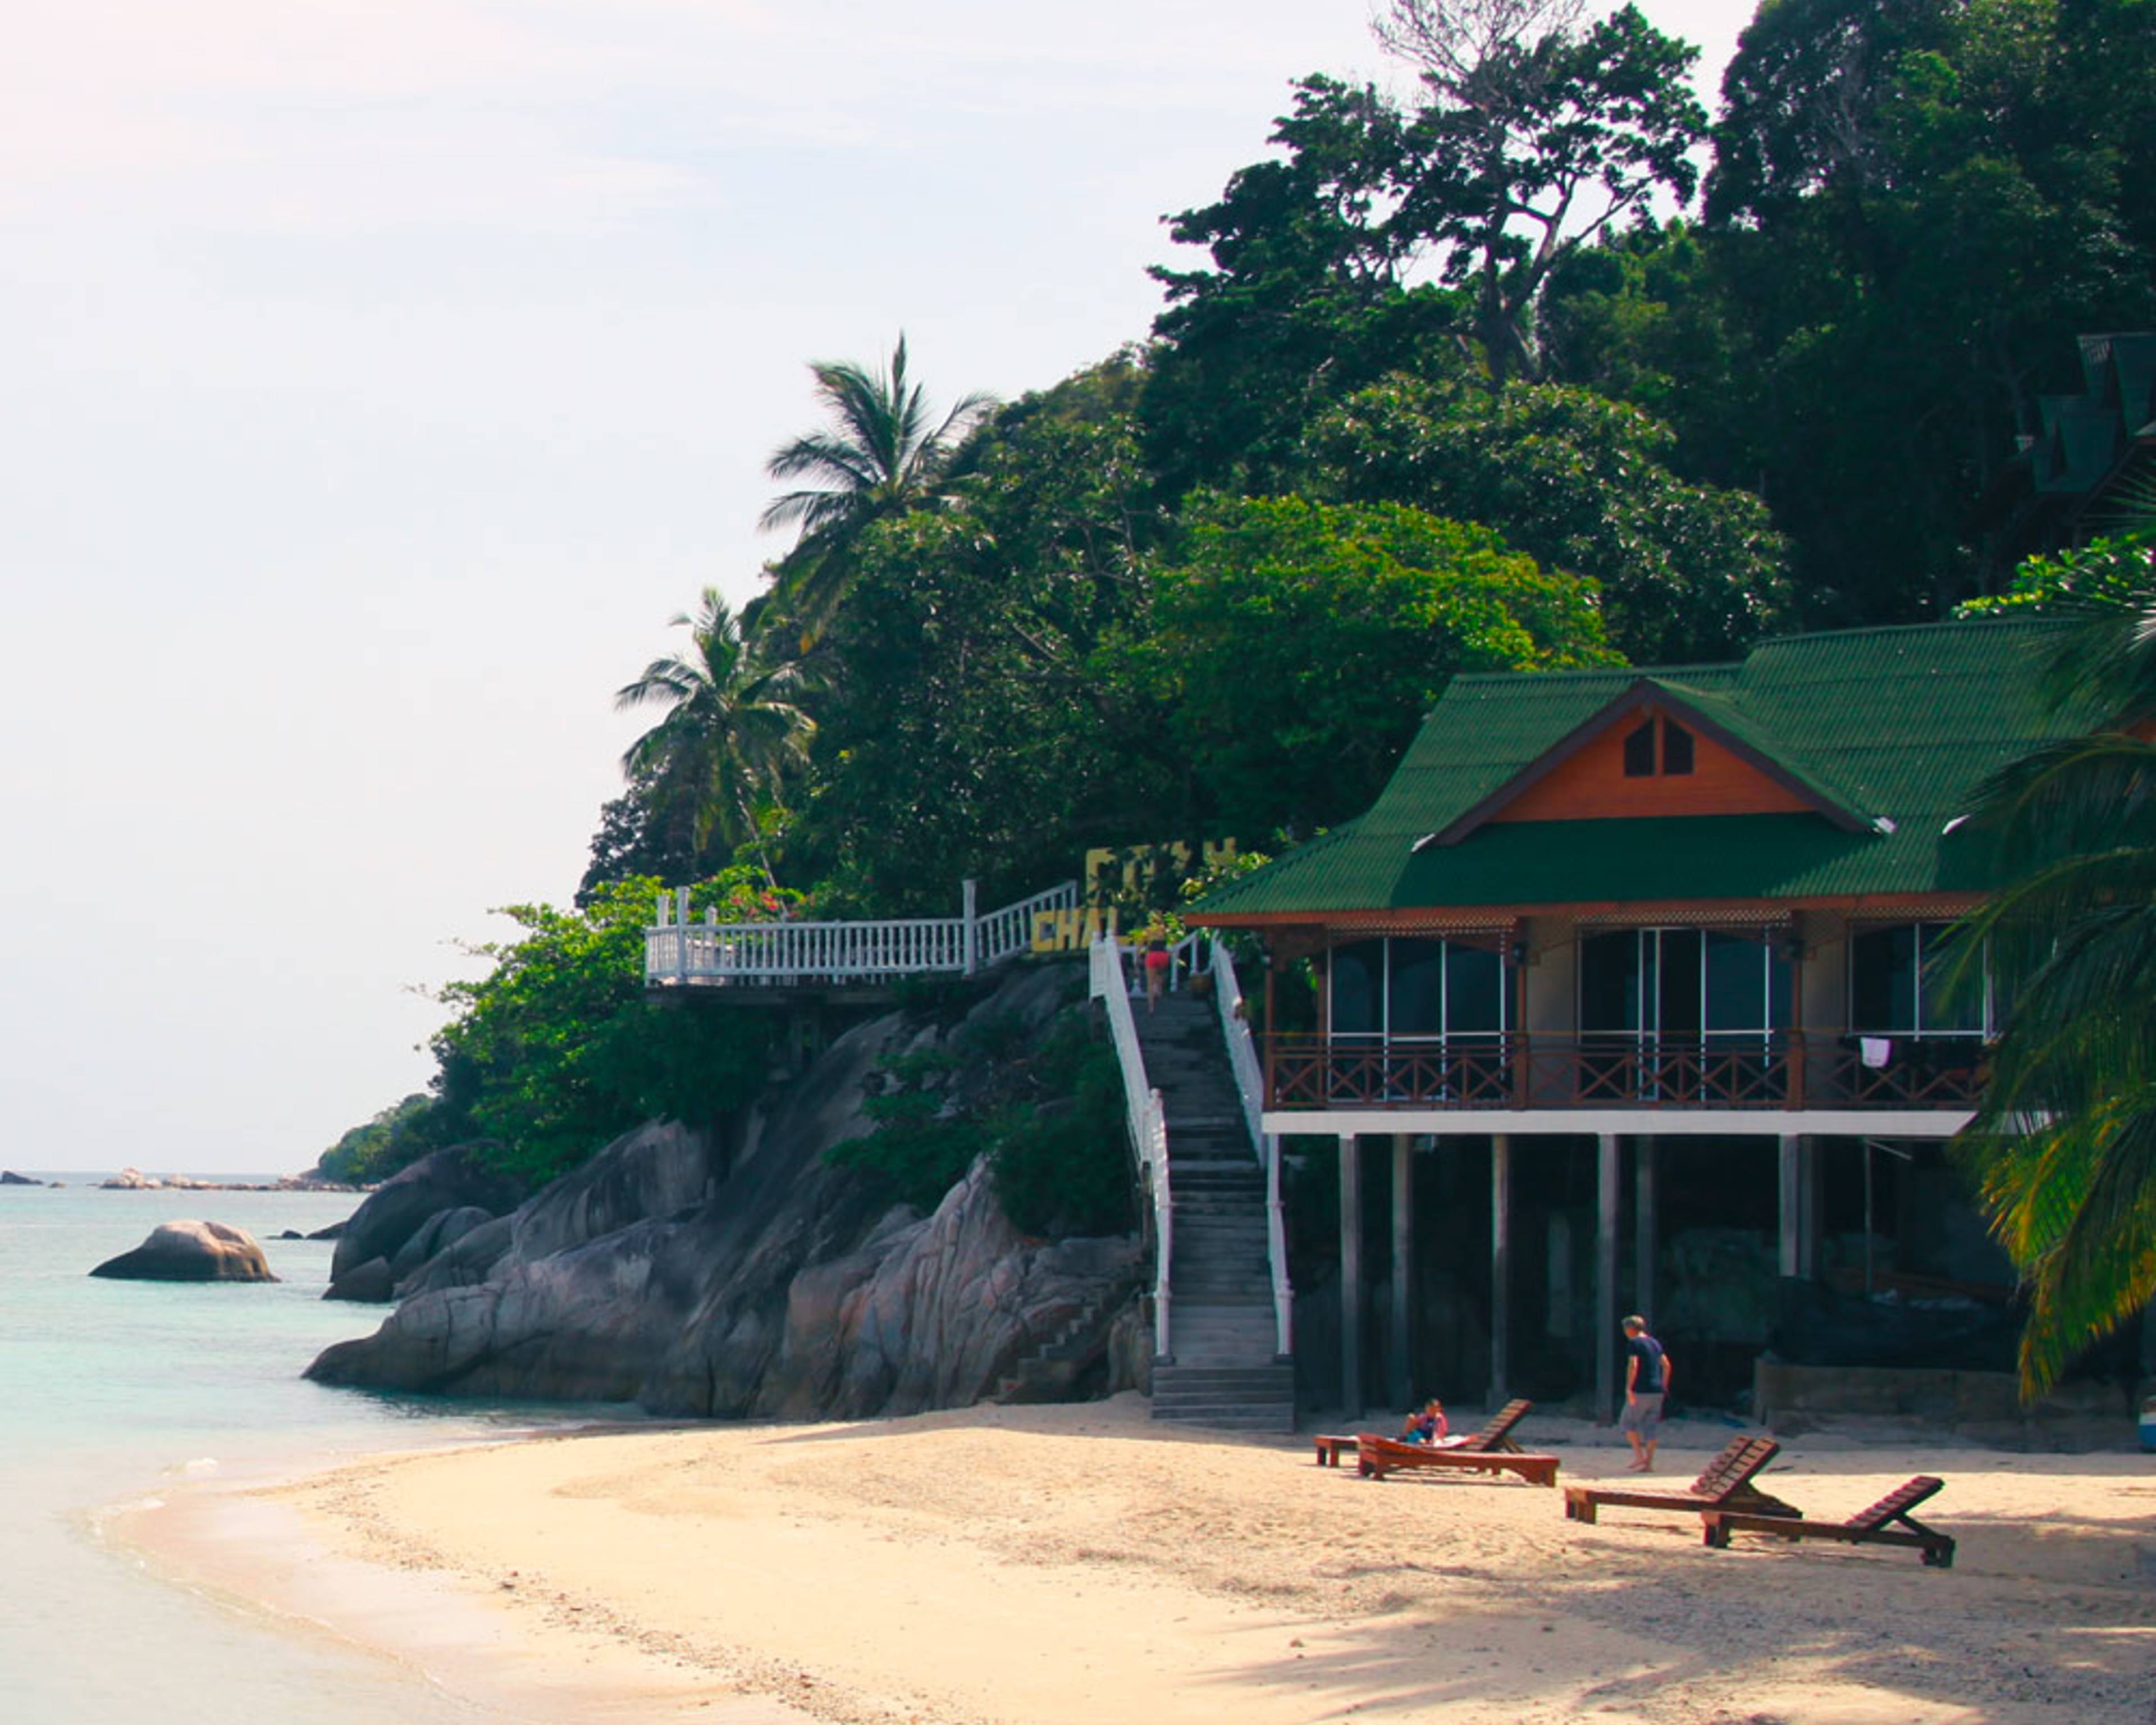 Découvrez les plus belles plages lors de votre voyage en Malaisie 100% sur mesure